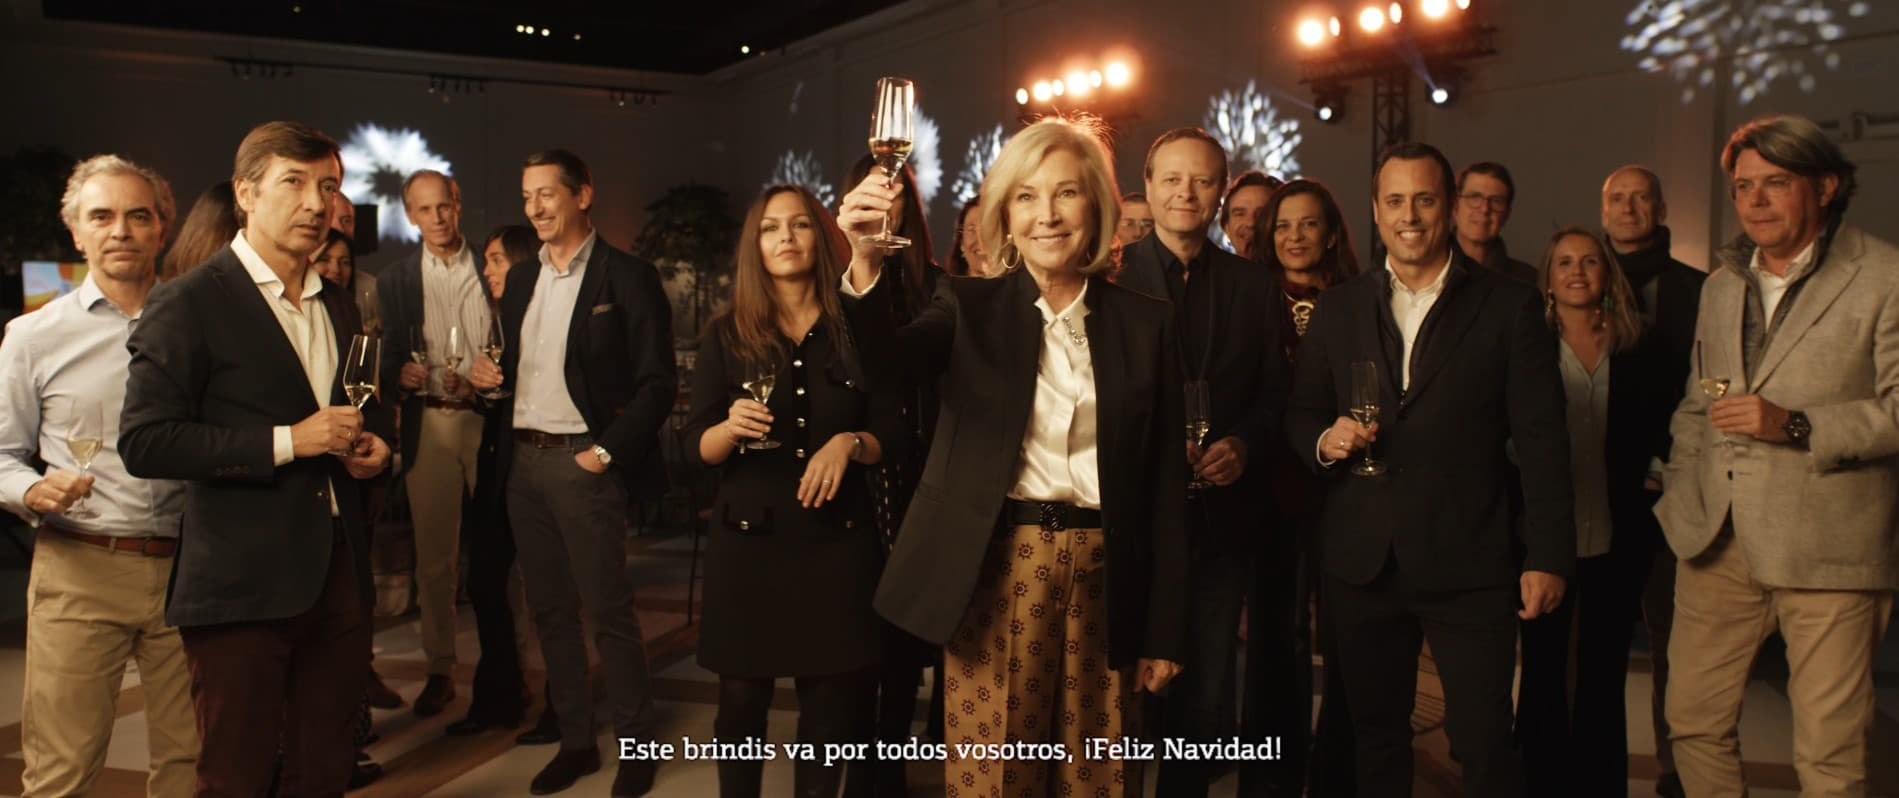 video-navidad-10 (1).jpg